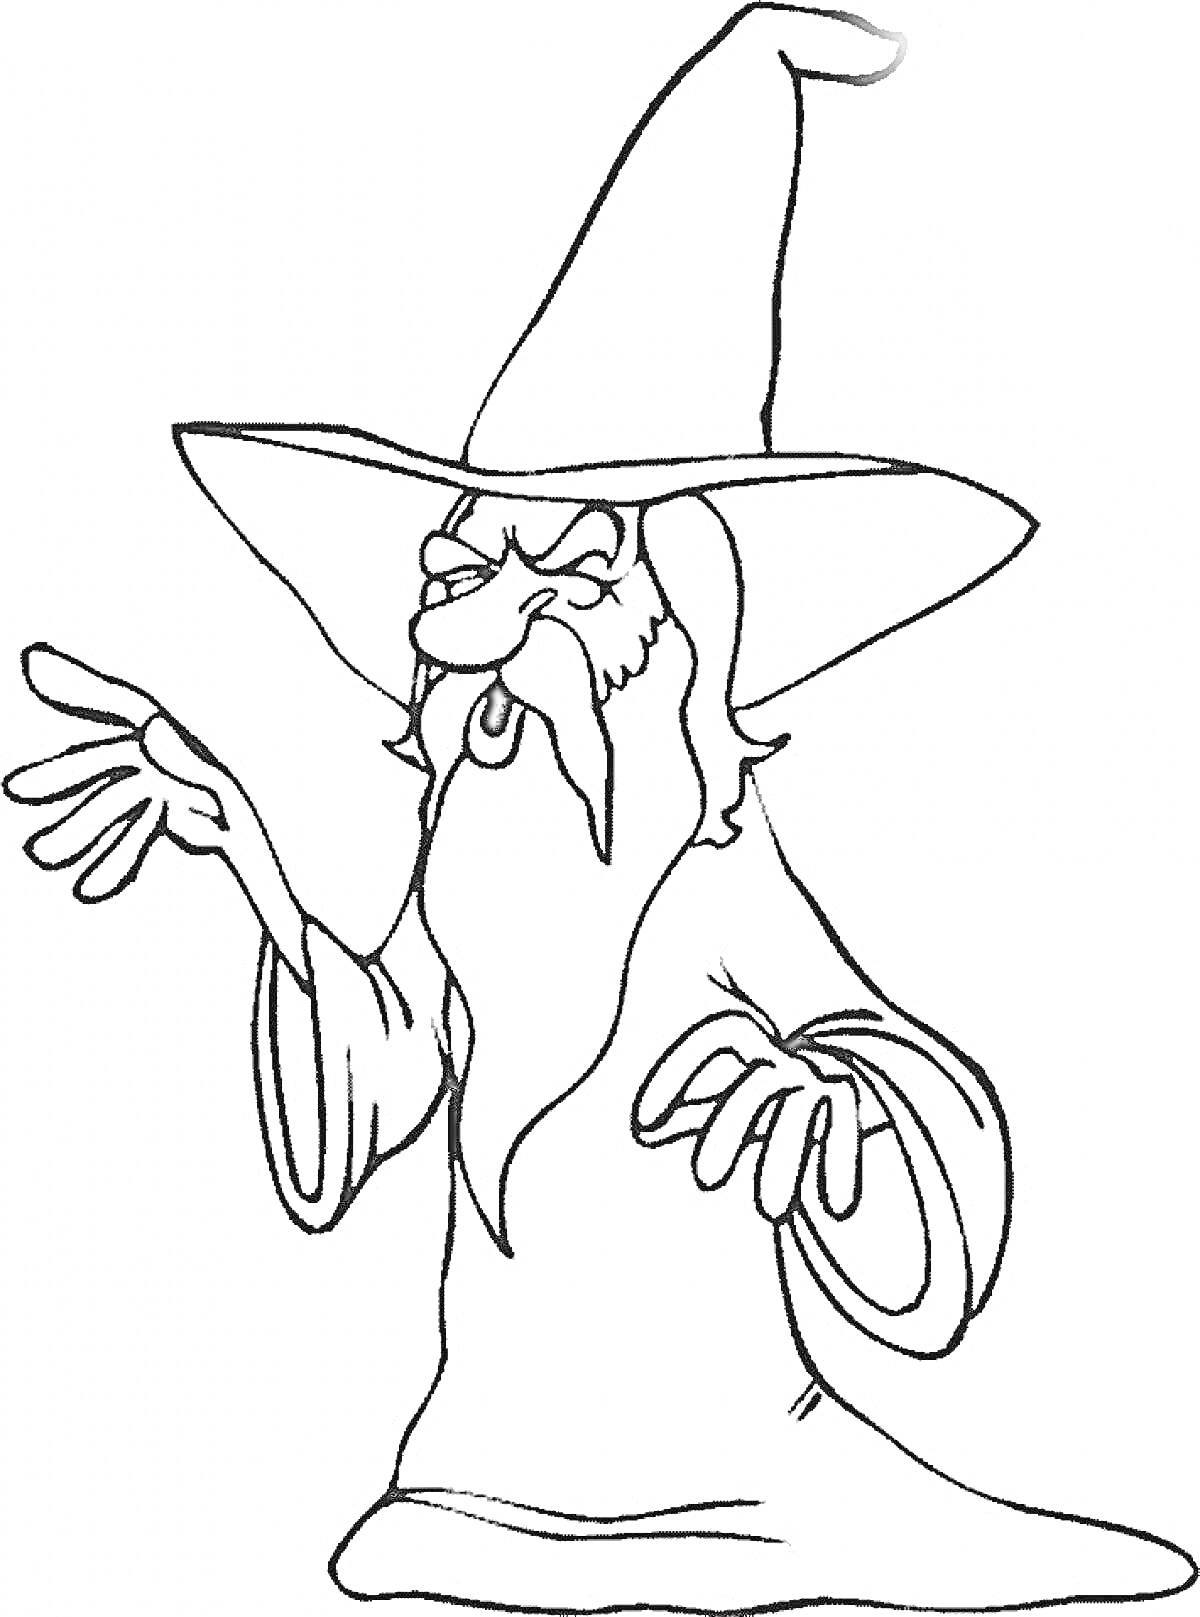 Волшебник в высокой шляпе с длинной бородой и вытянутыми руками